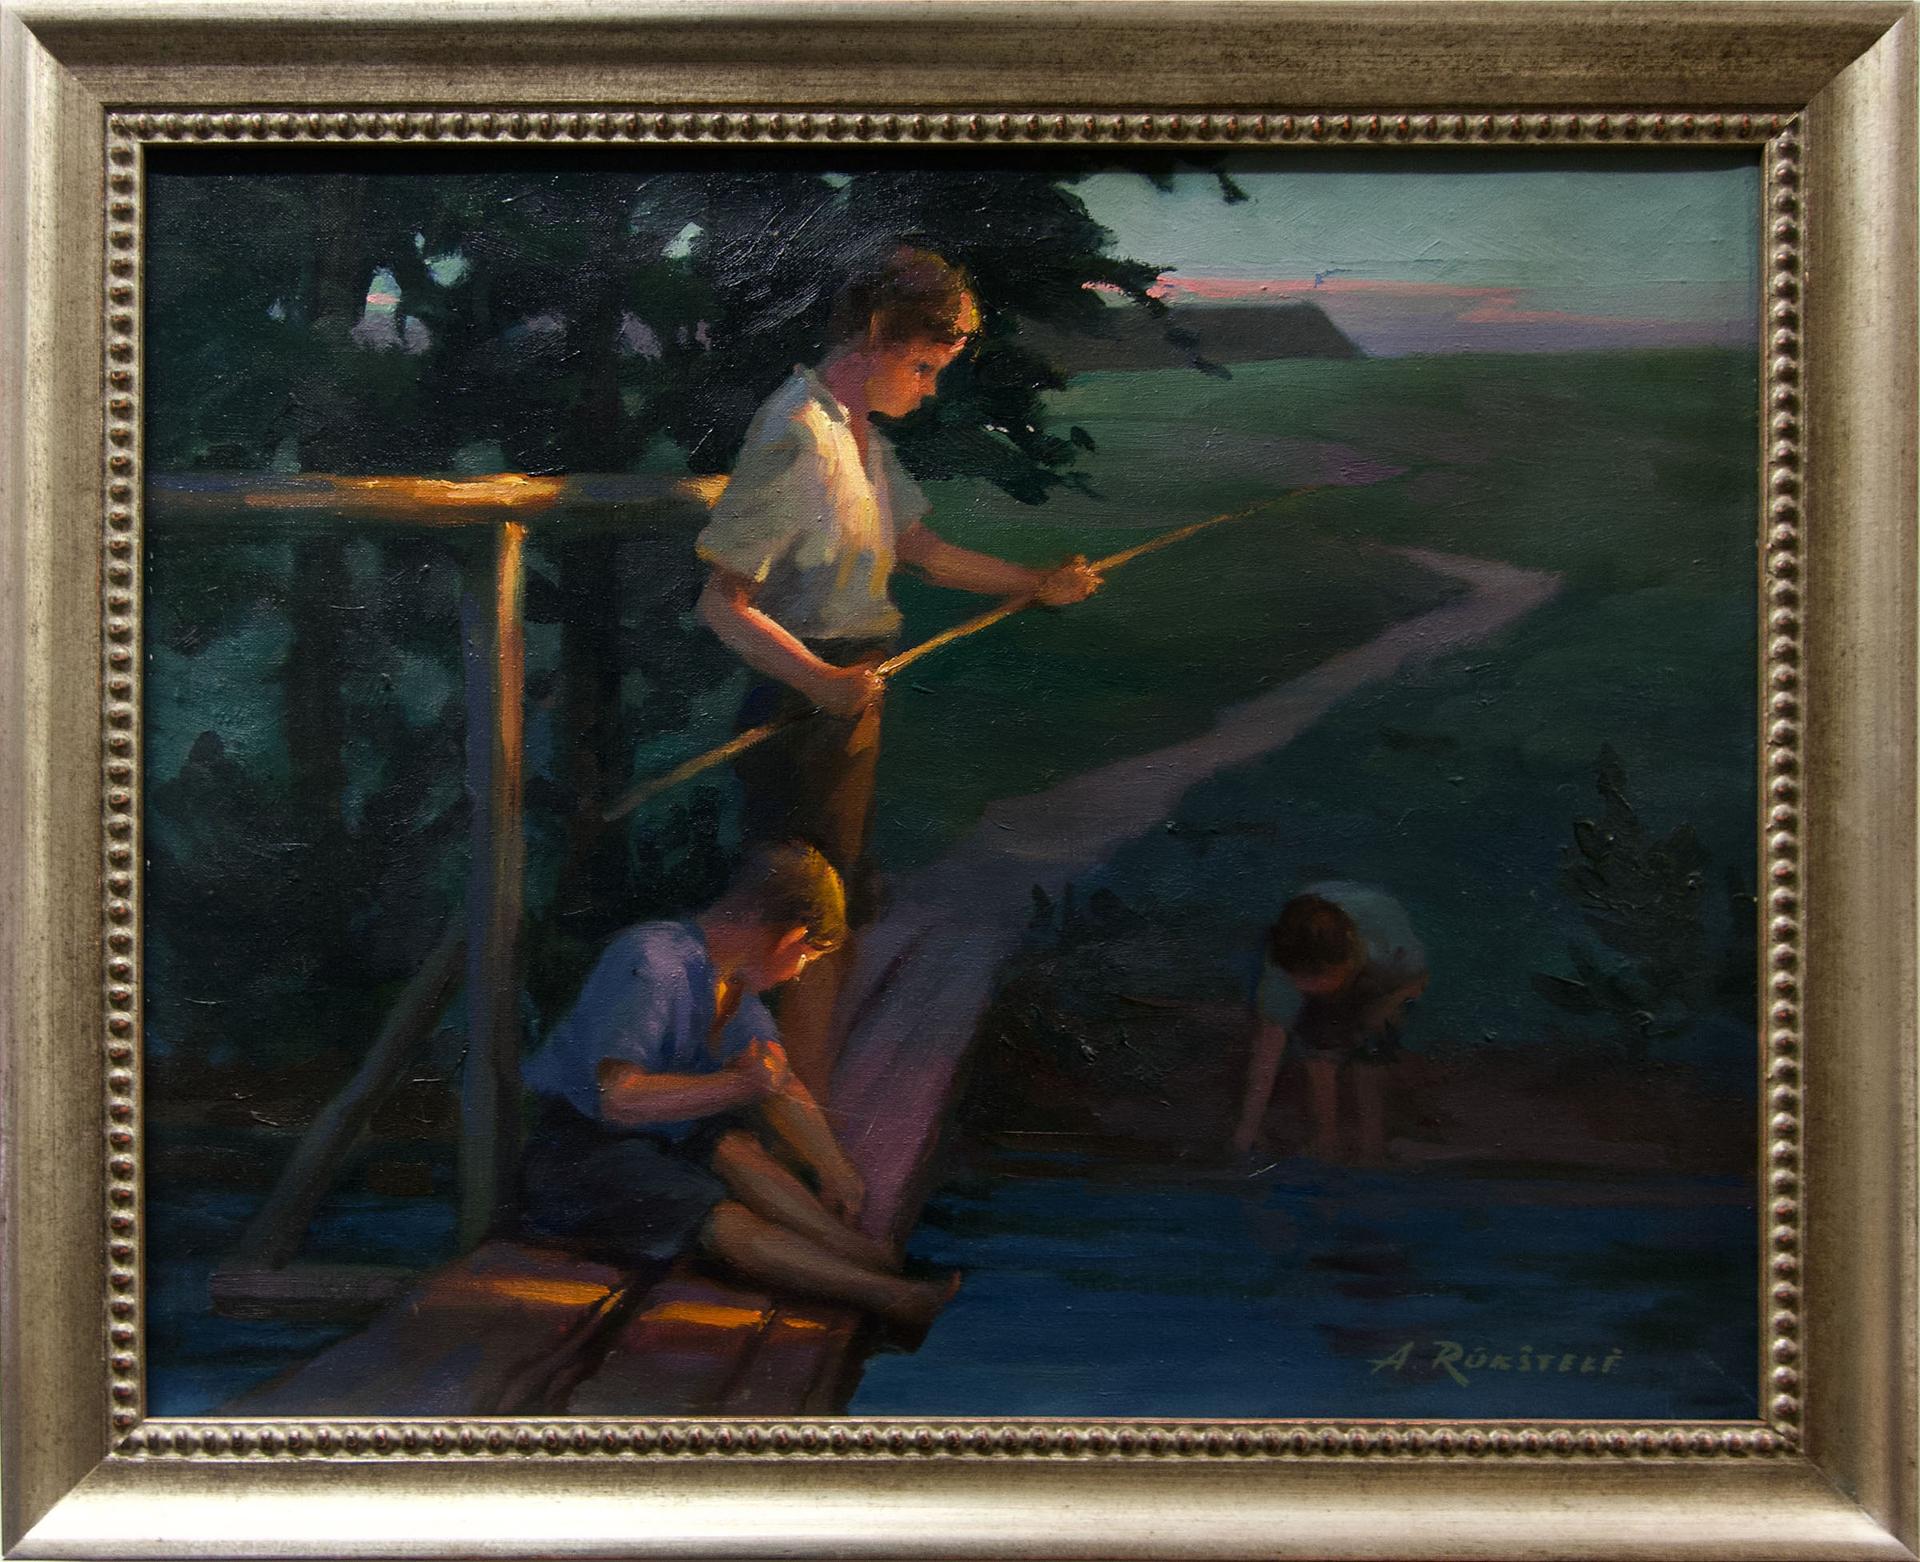 Antanas Rukštele - Untitled (Twilight Fishing)